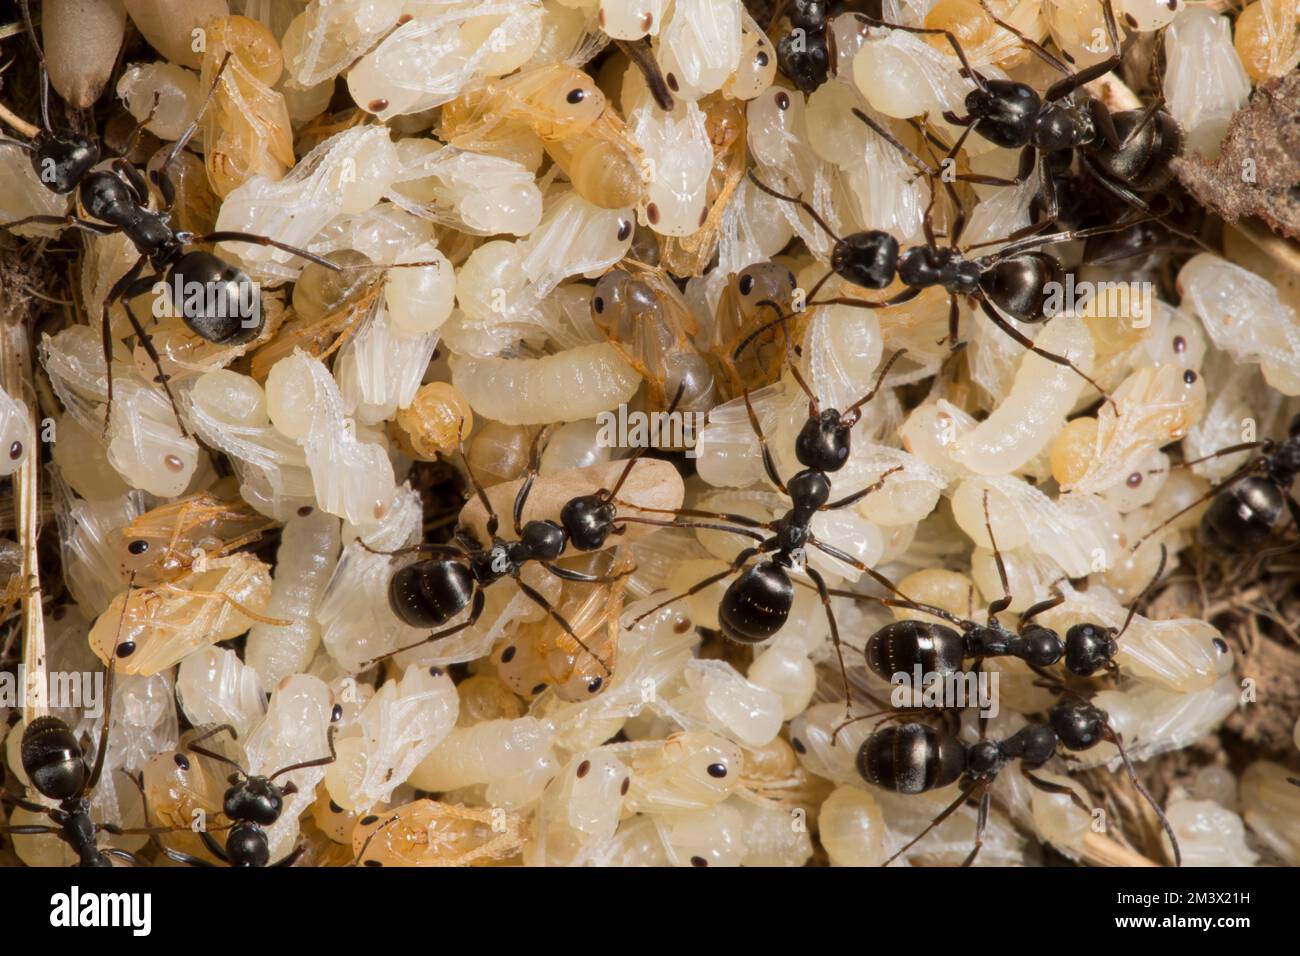 Les fourmis dusky (Formica fusca) travaillent avec des pupes dans un nid. Powys, pays de Galles. Juillet. Banque D'Images